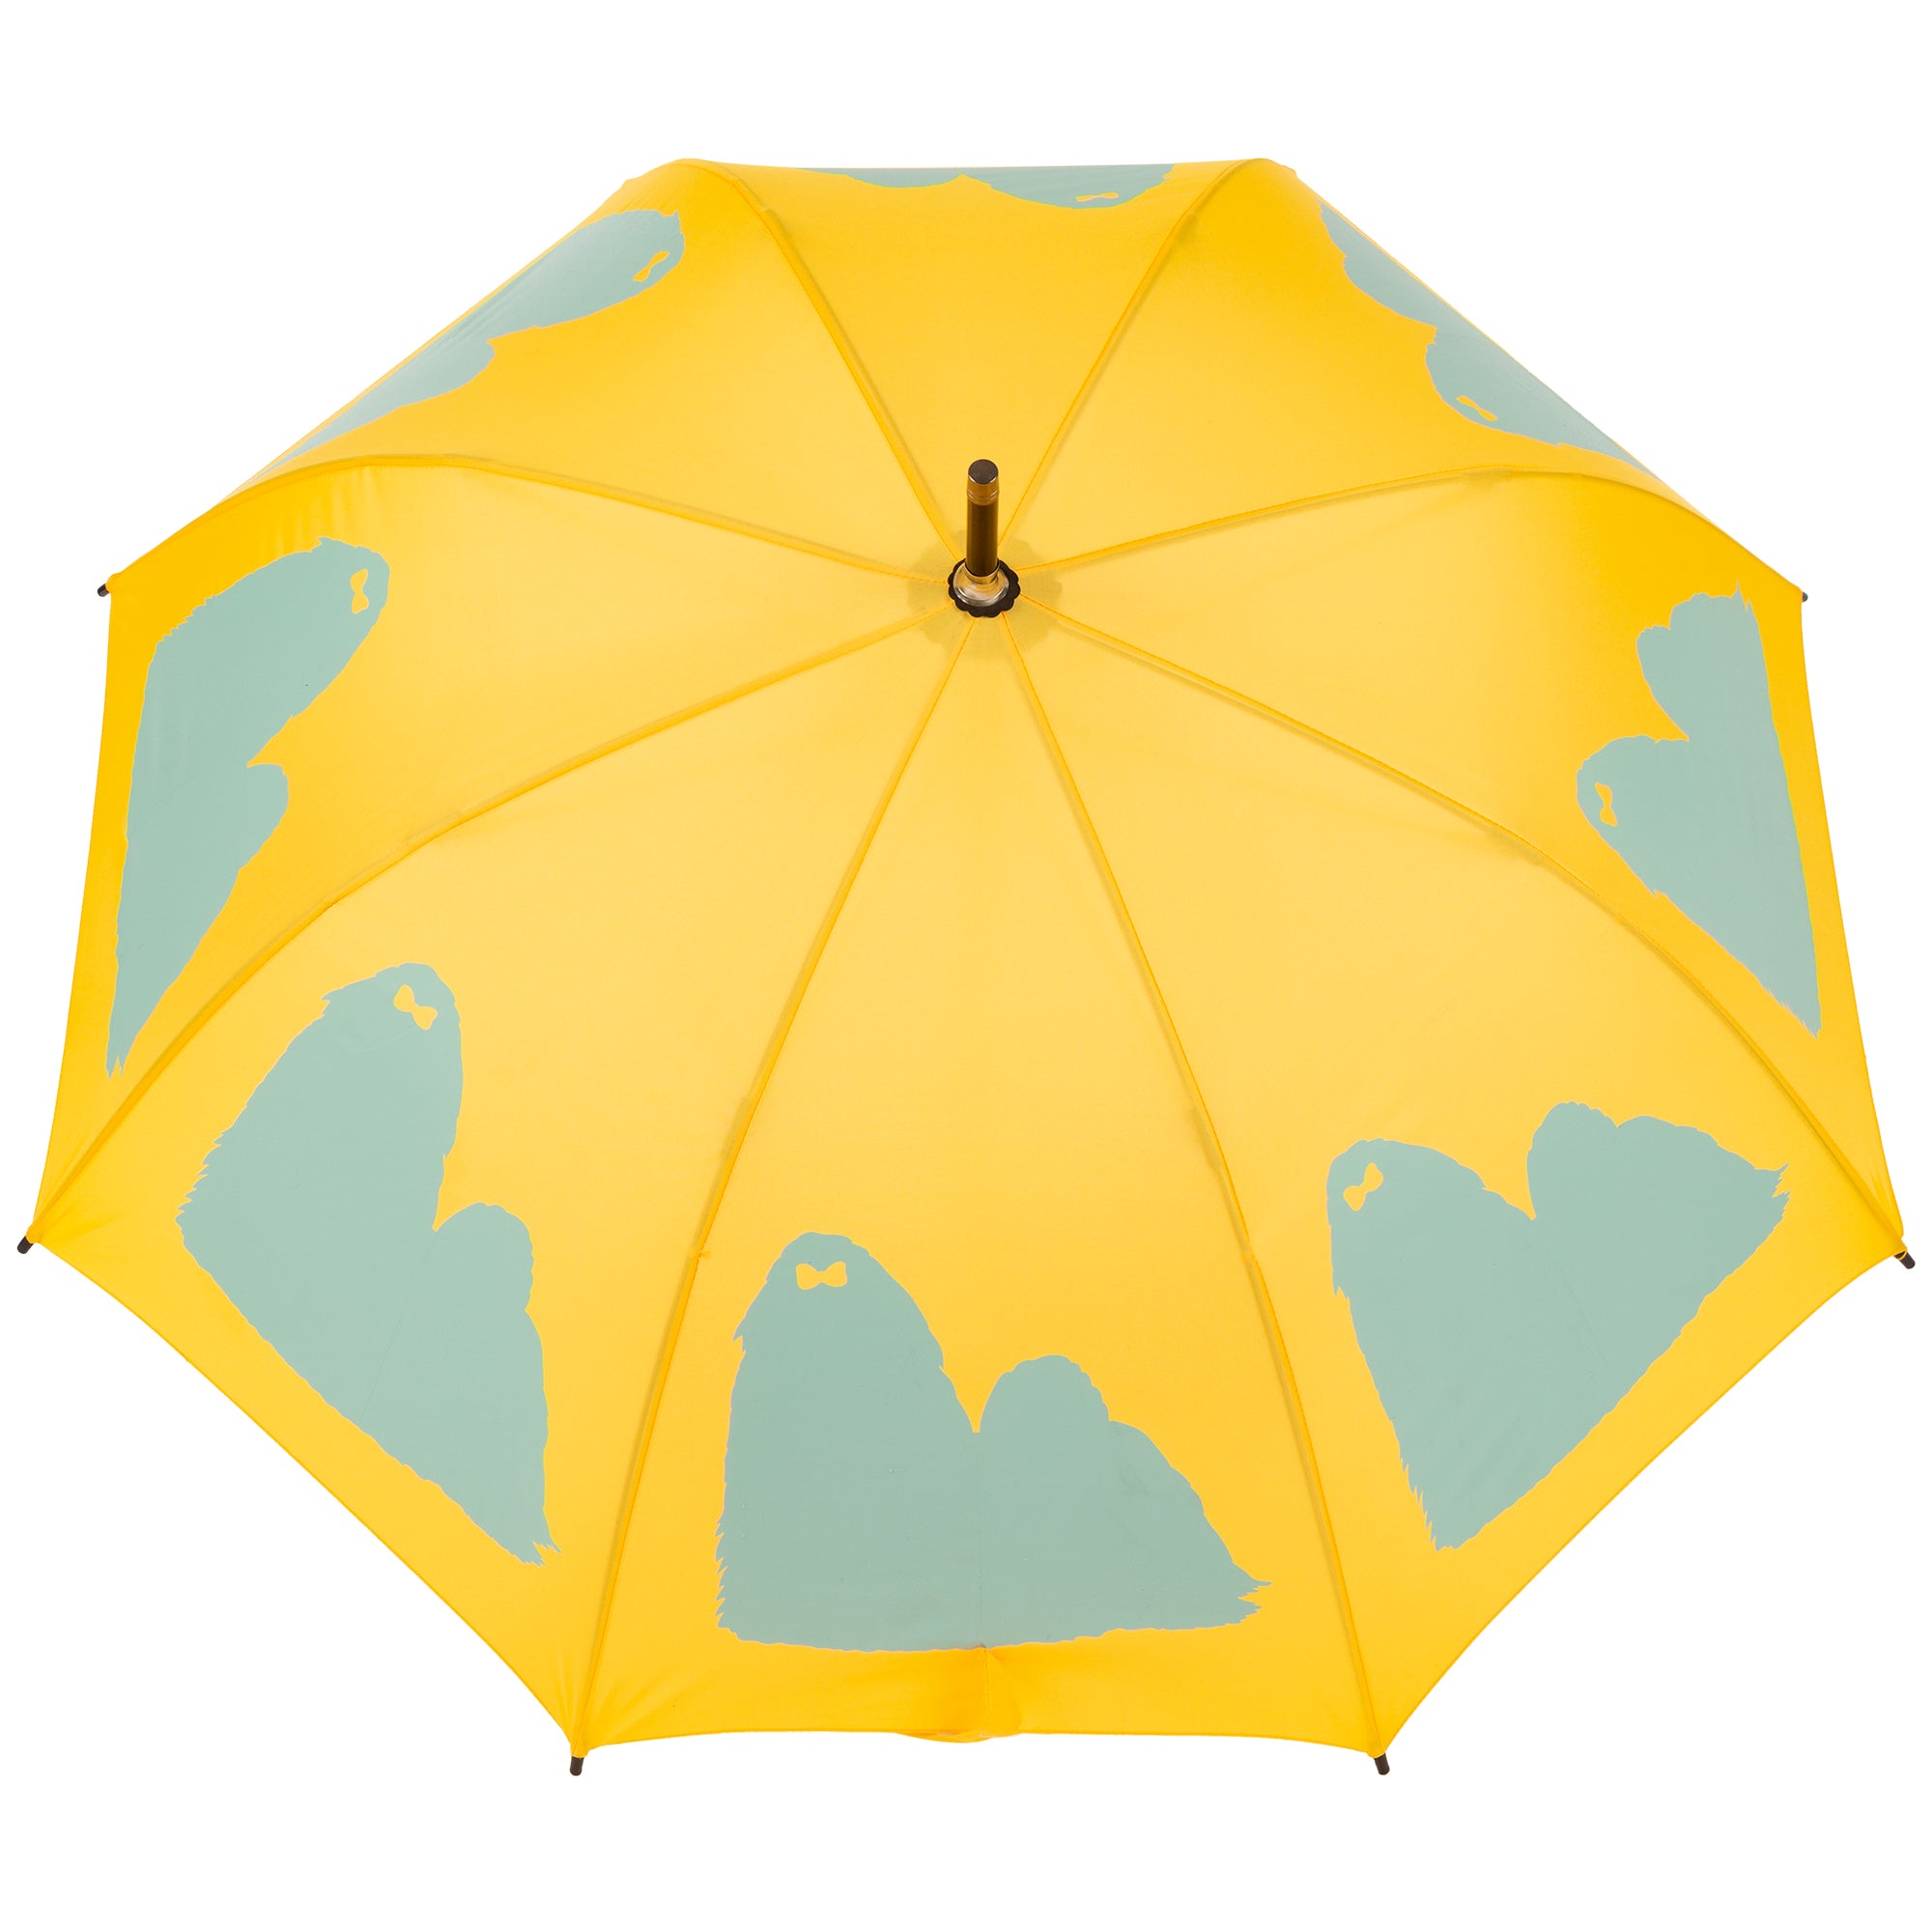 Darling Dog Silhouette Umbrella - Shih Tzu